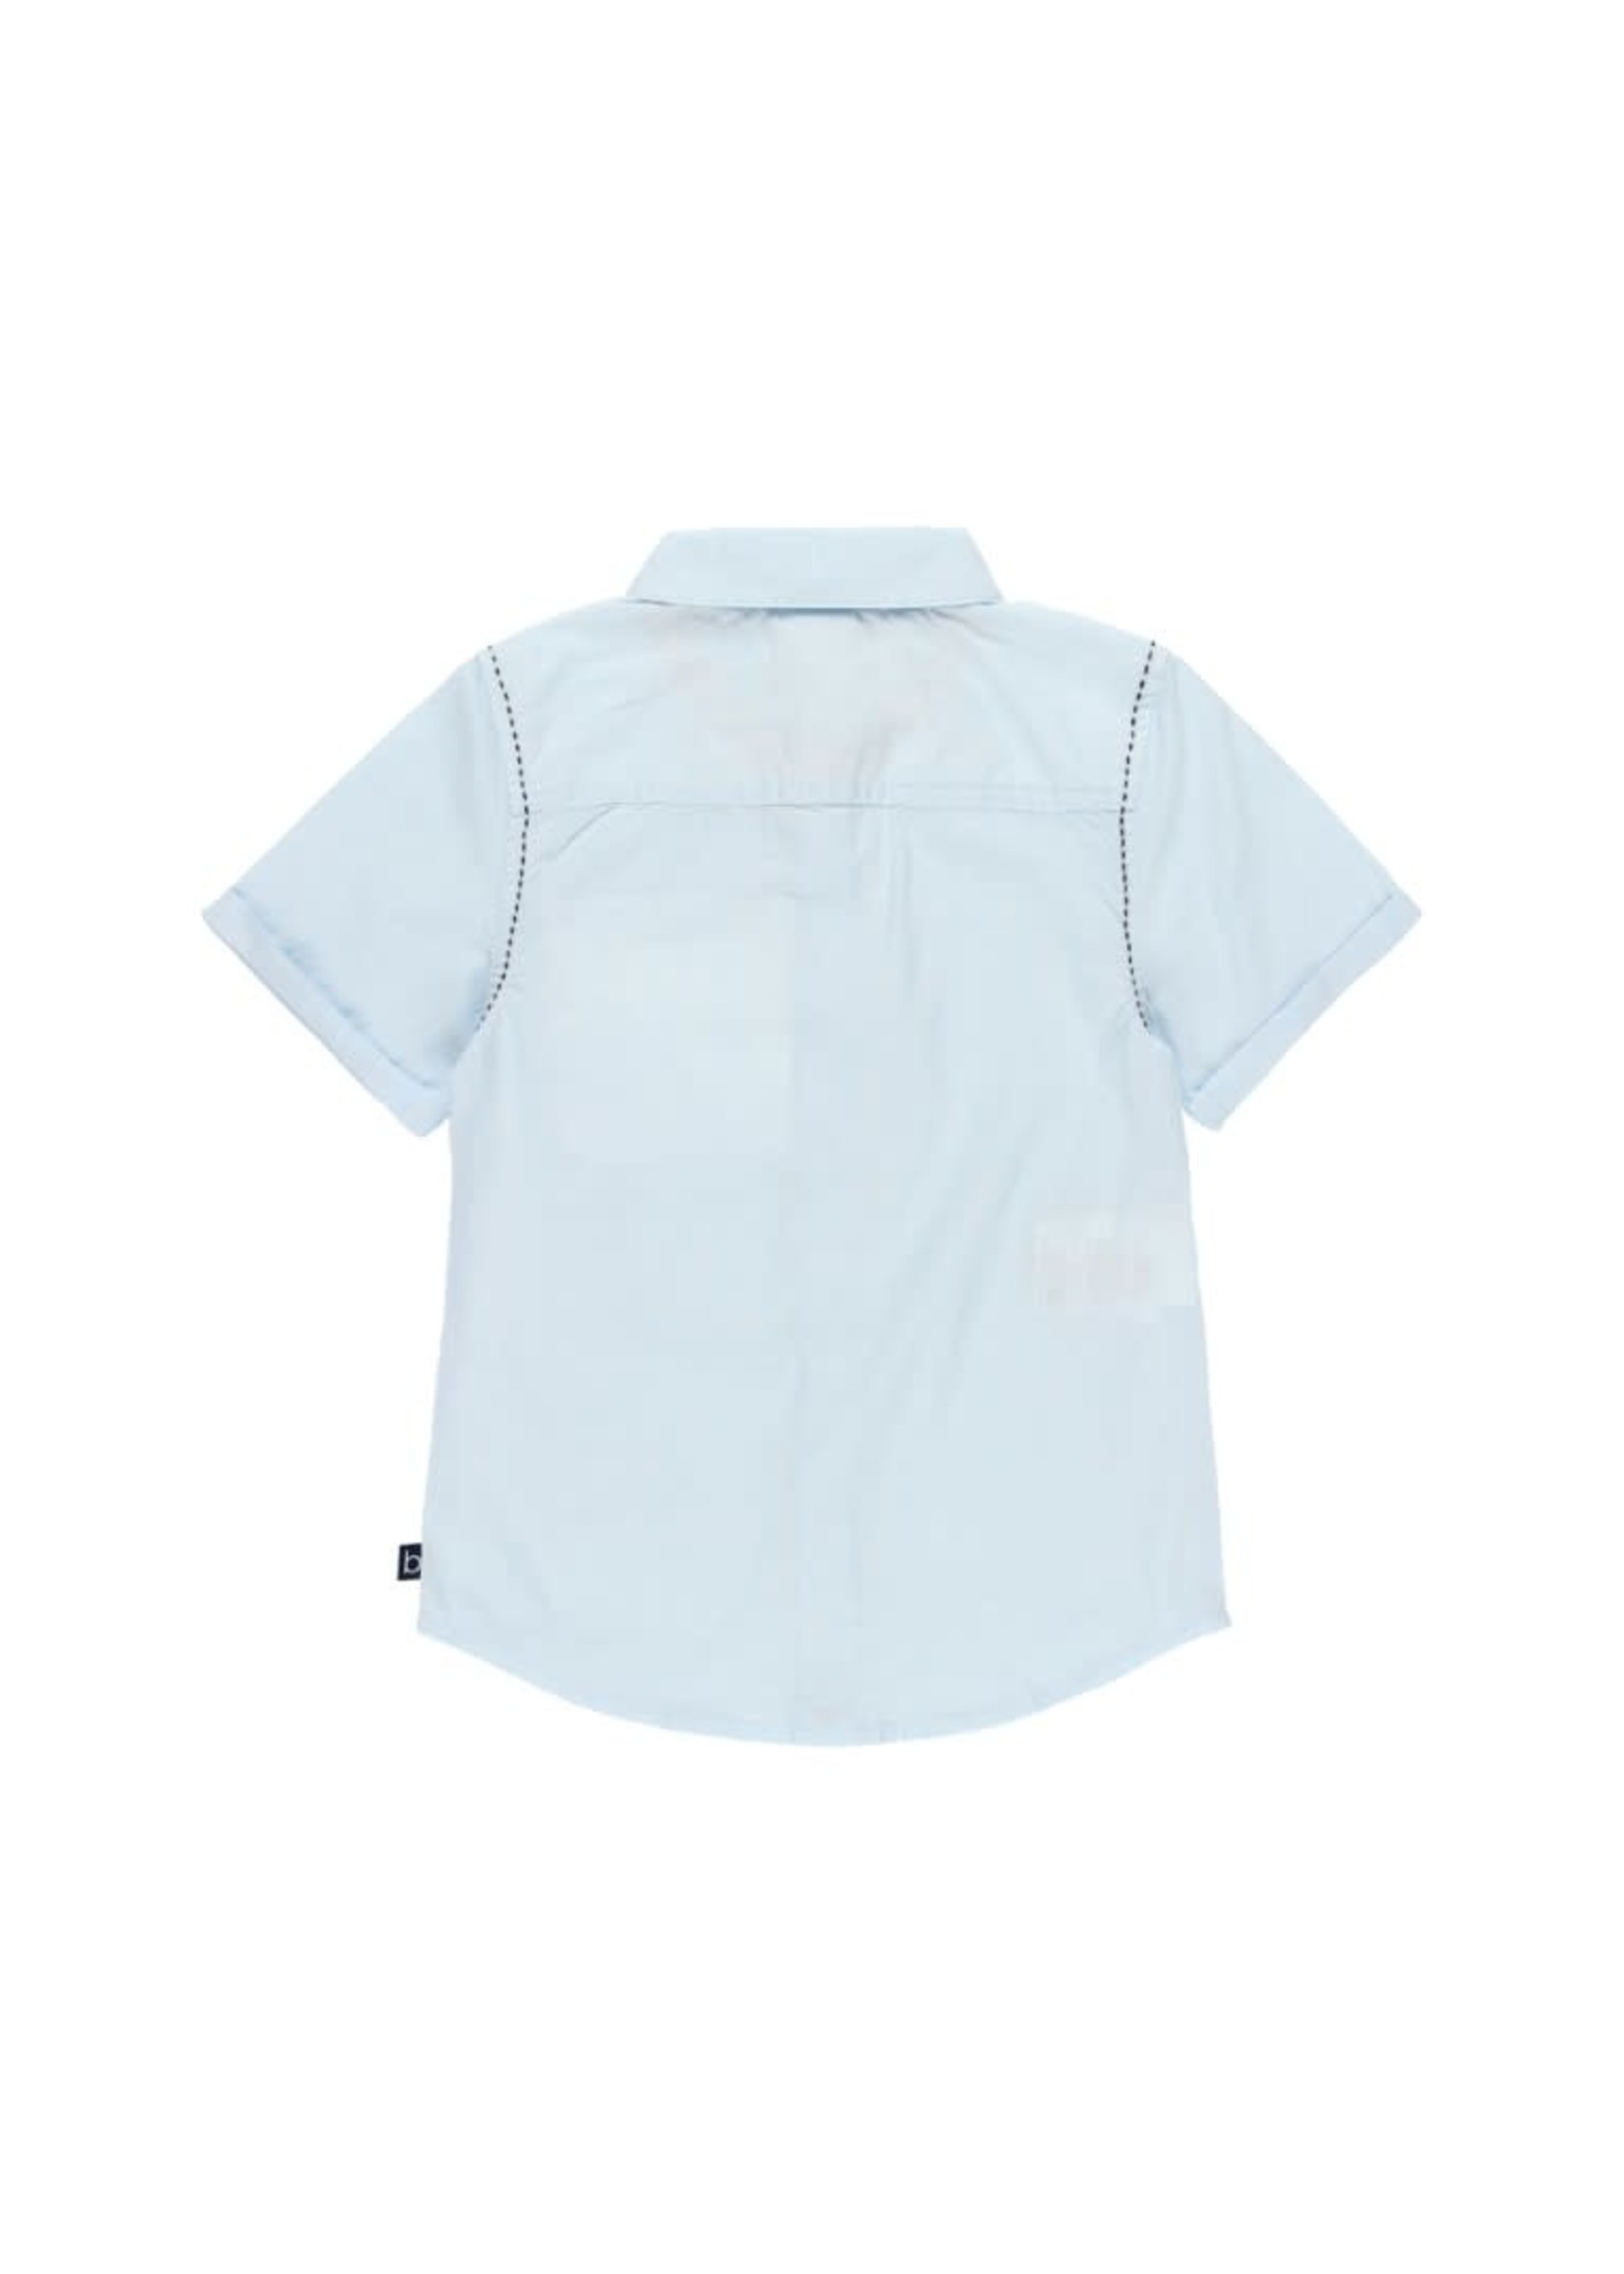 Boboli Boboli Shirt short sleeves for boy BLUE 734206